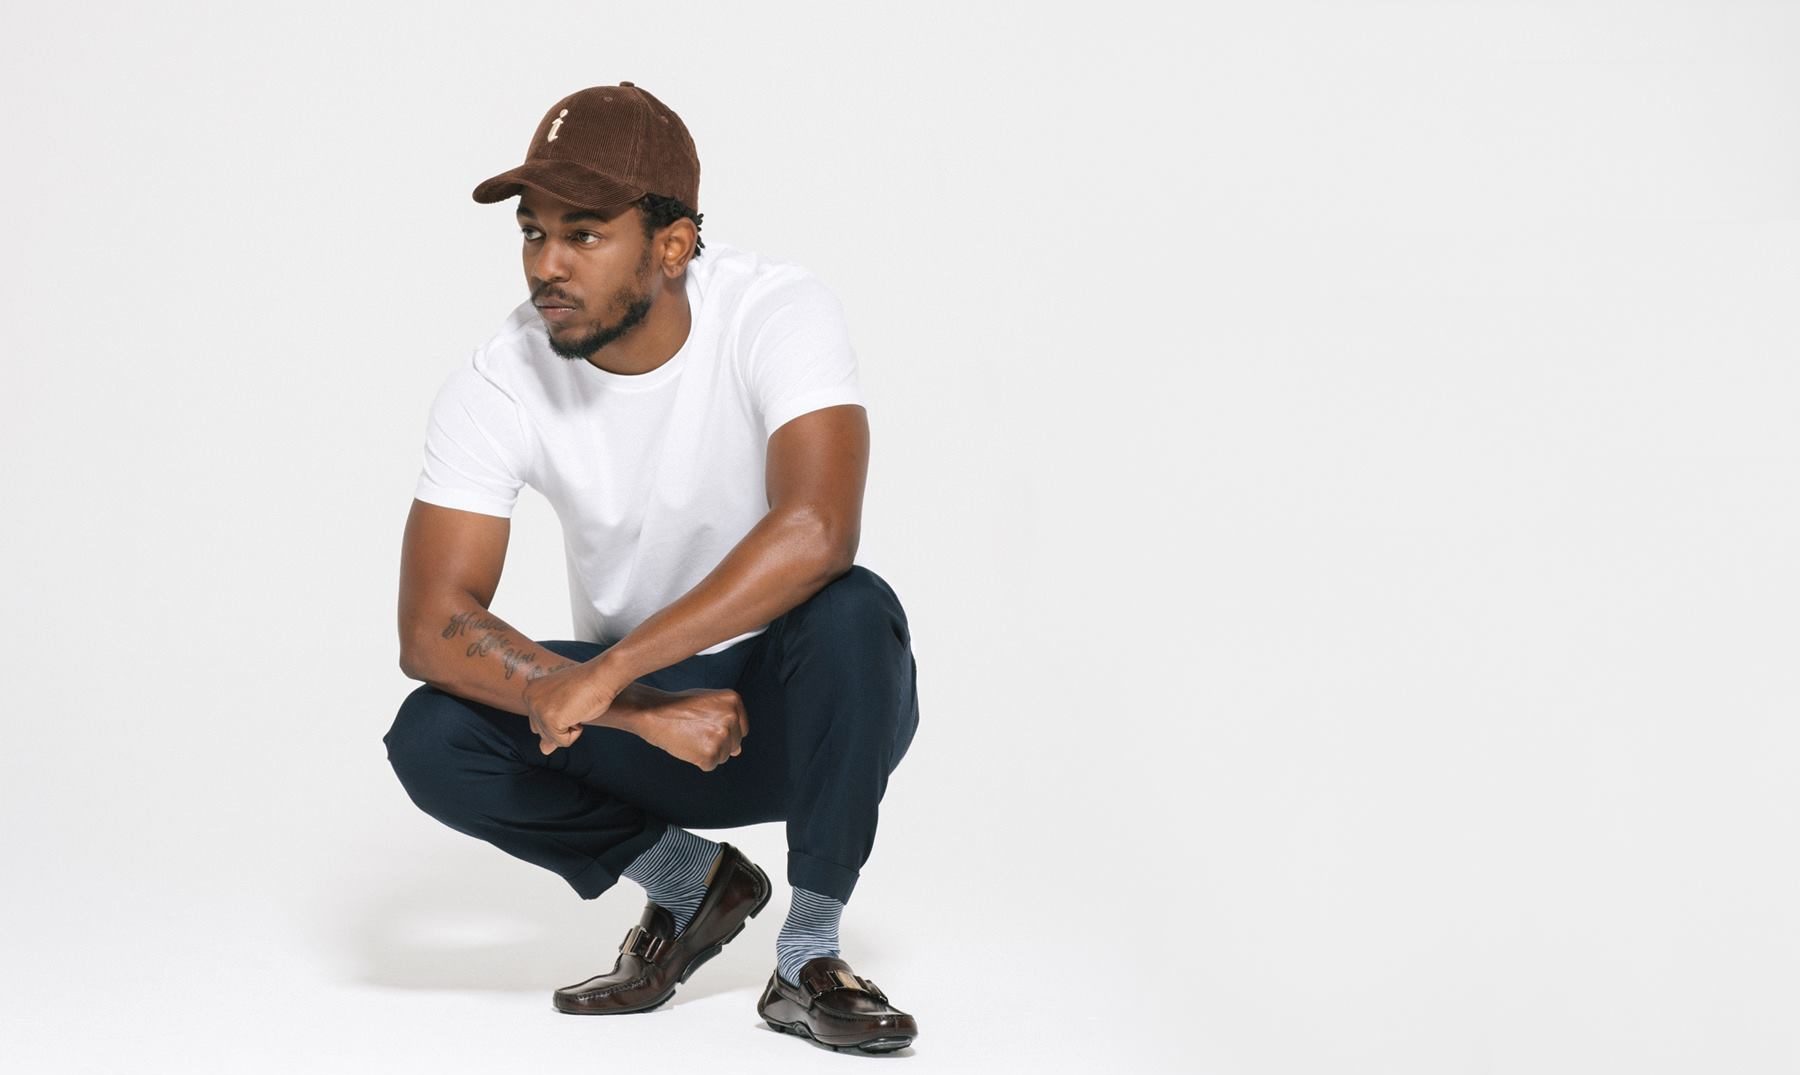 Kendrick Lamar portrait - Electric Picnic 2018 - Lineupping.com